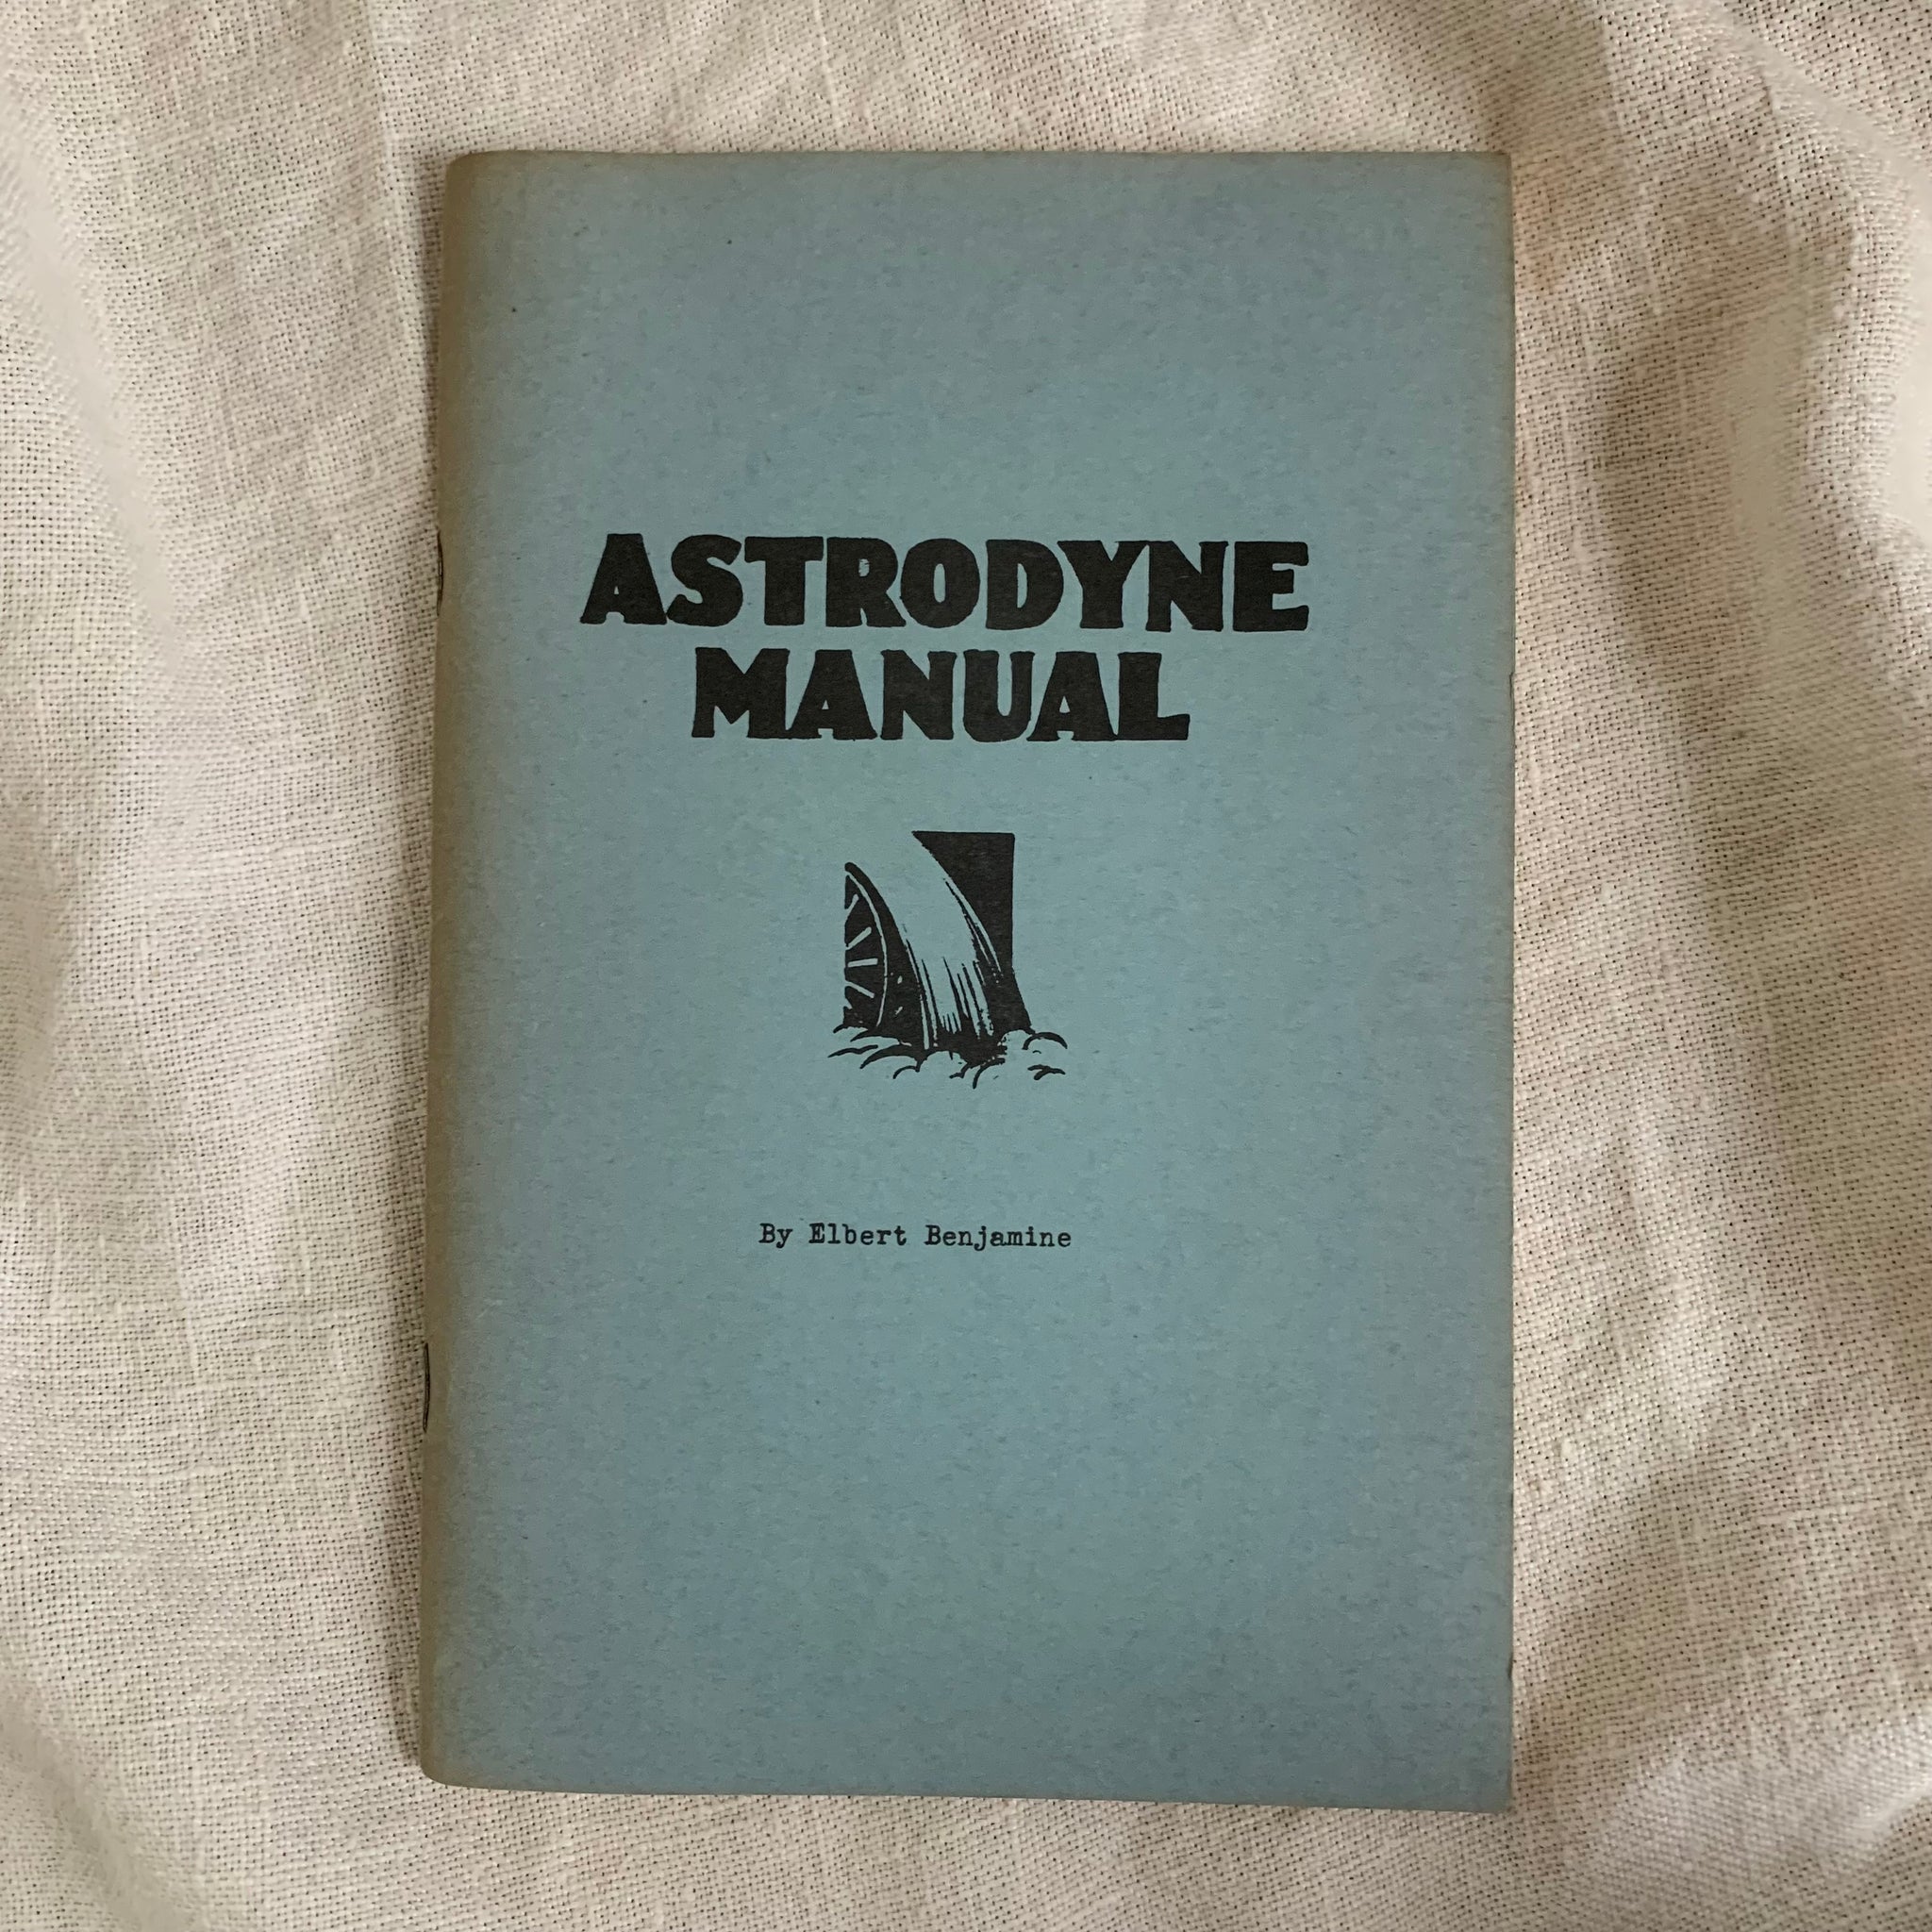 [Astrology] Astrodyne Manual by Elbert Benjamine